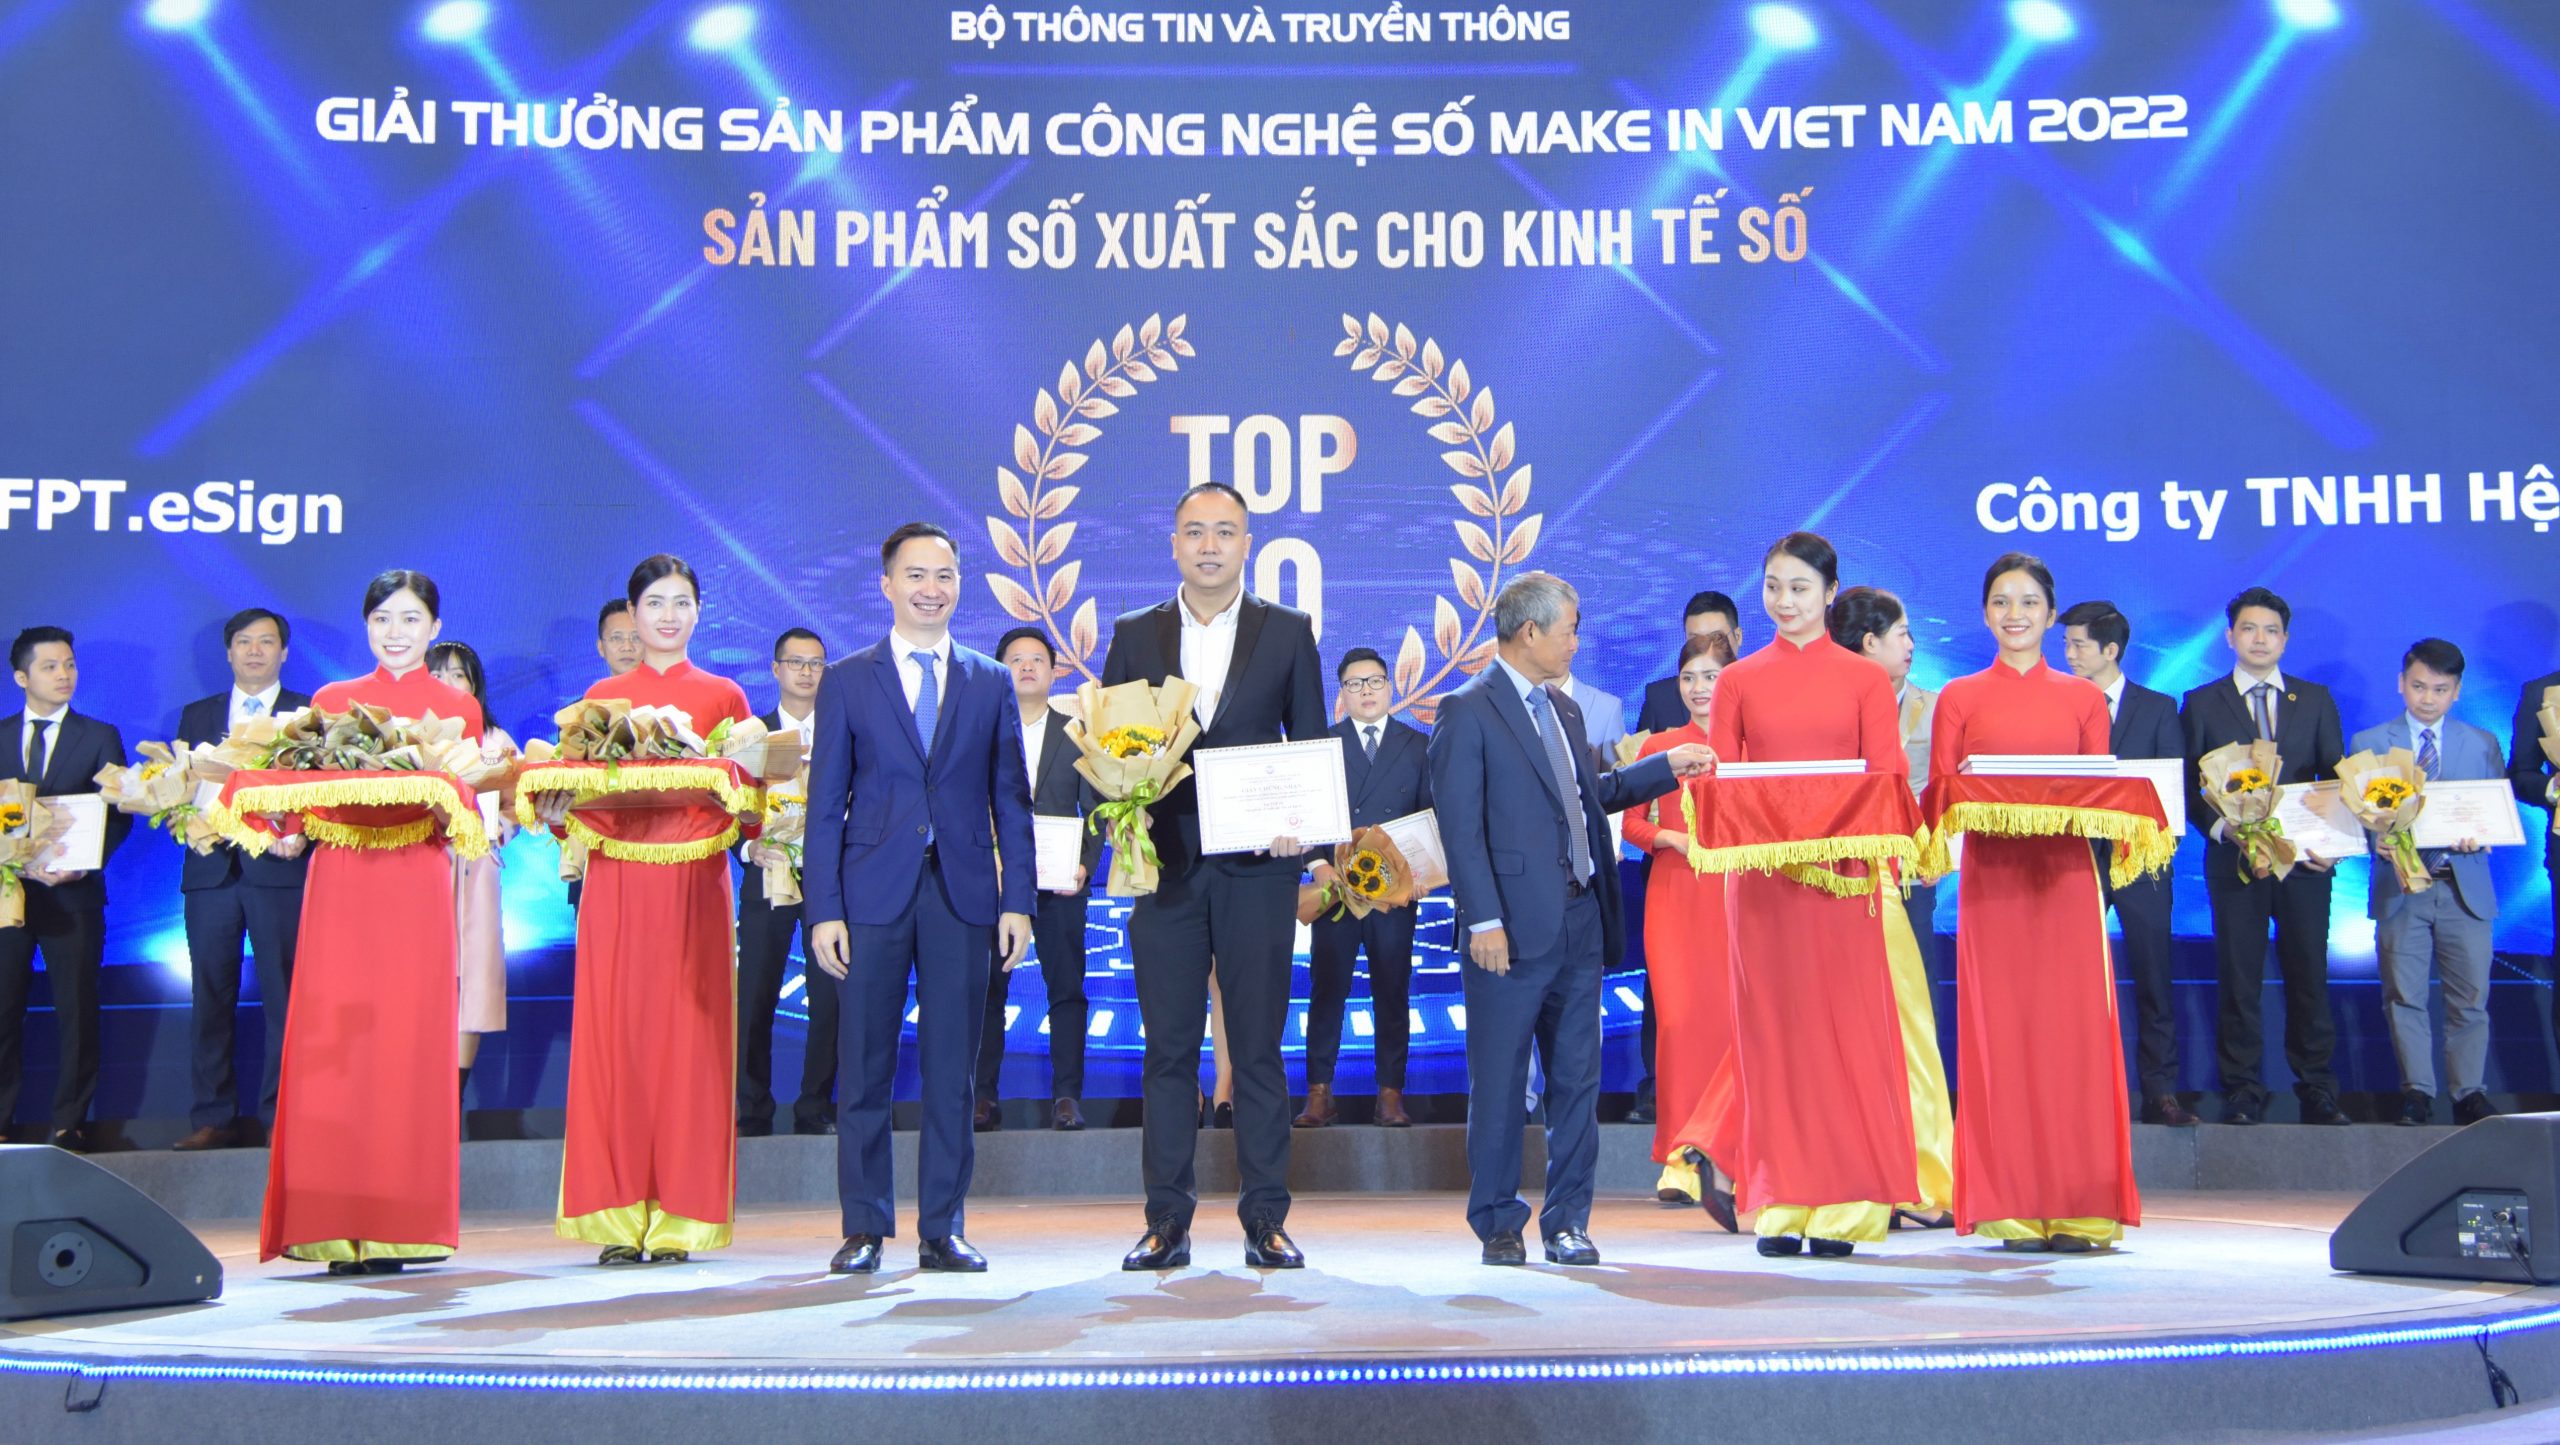 Chữ ký số từ xa – FPT.eSign đạt Top 10 Sản phẩm số xuất sắc cho Kinh tế số – Giải thưởng Sản phẩm công nghệ số Make in Viet Nam 2022